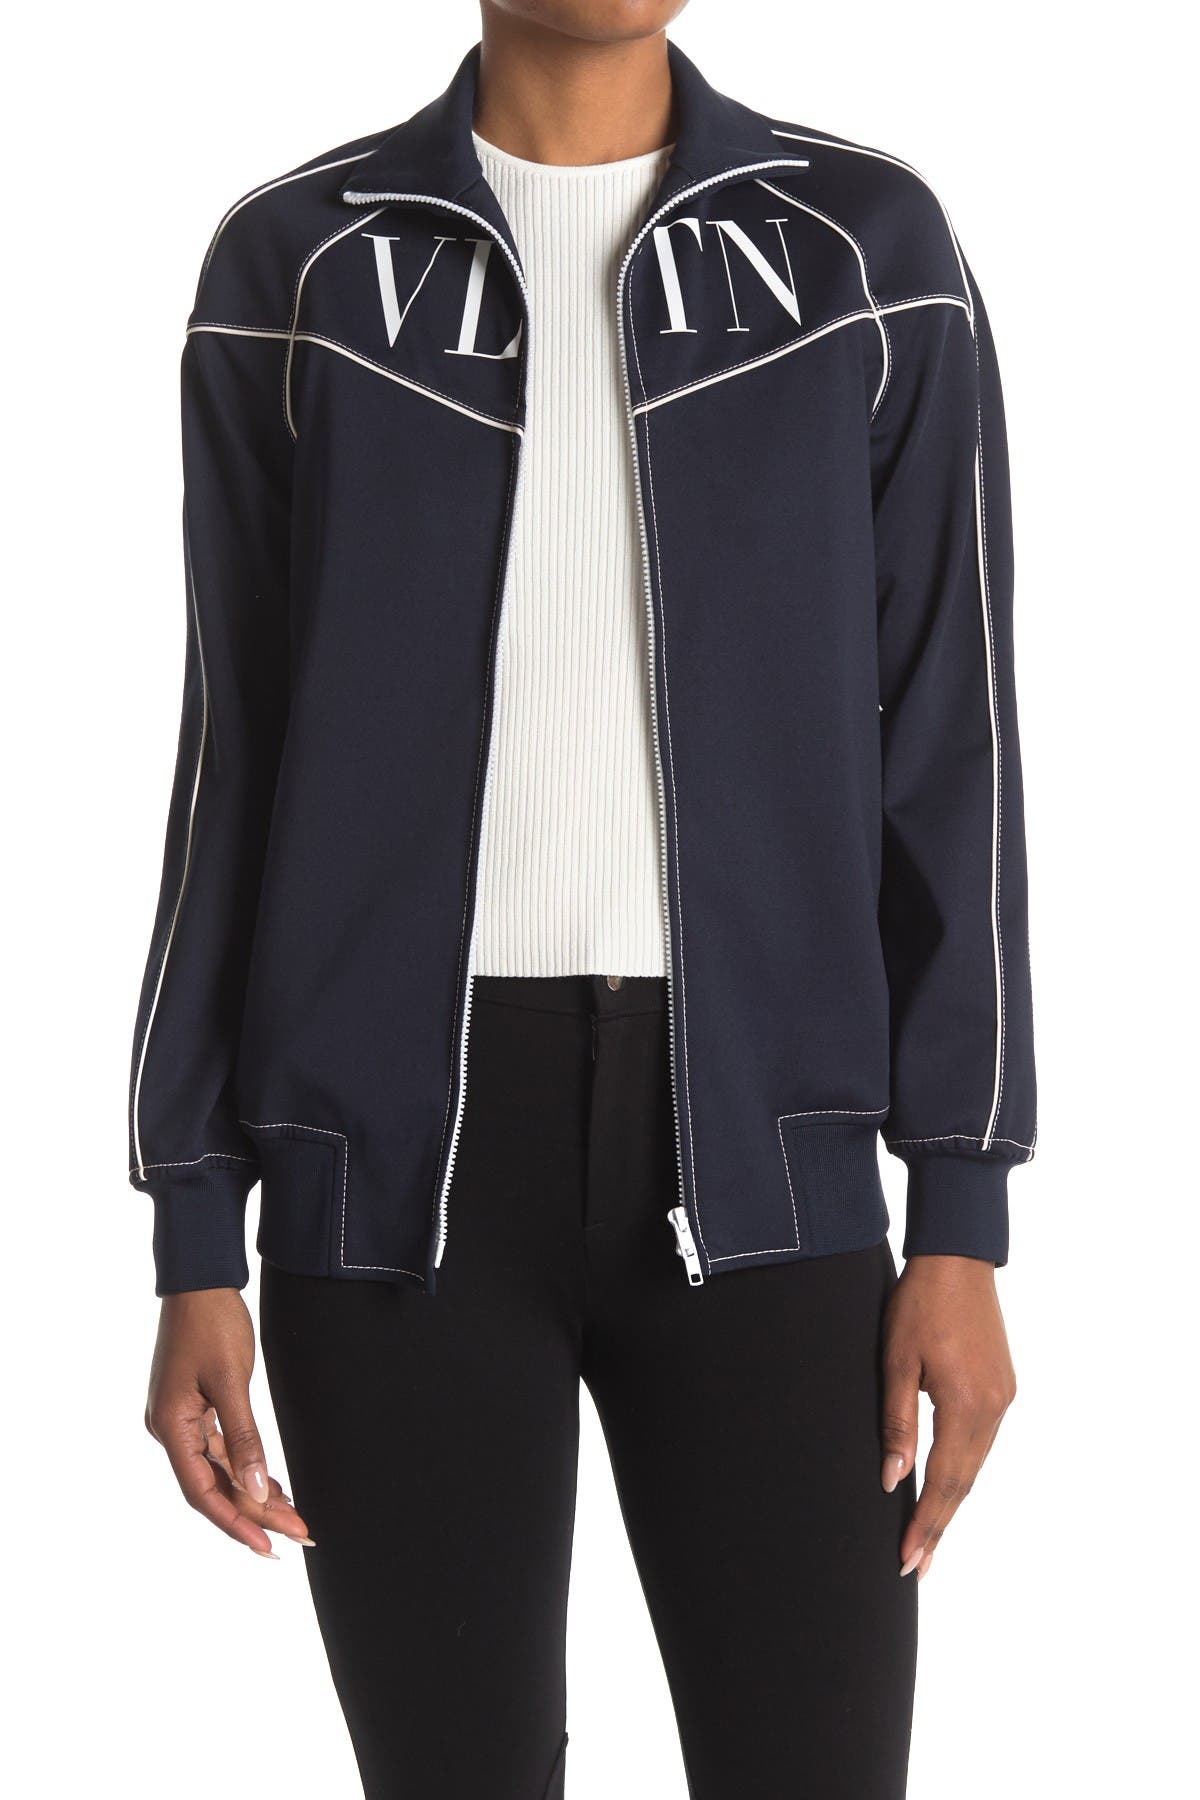 Valentino Donna Contrast Stitching Logo Zip Jacket In Navy